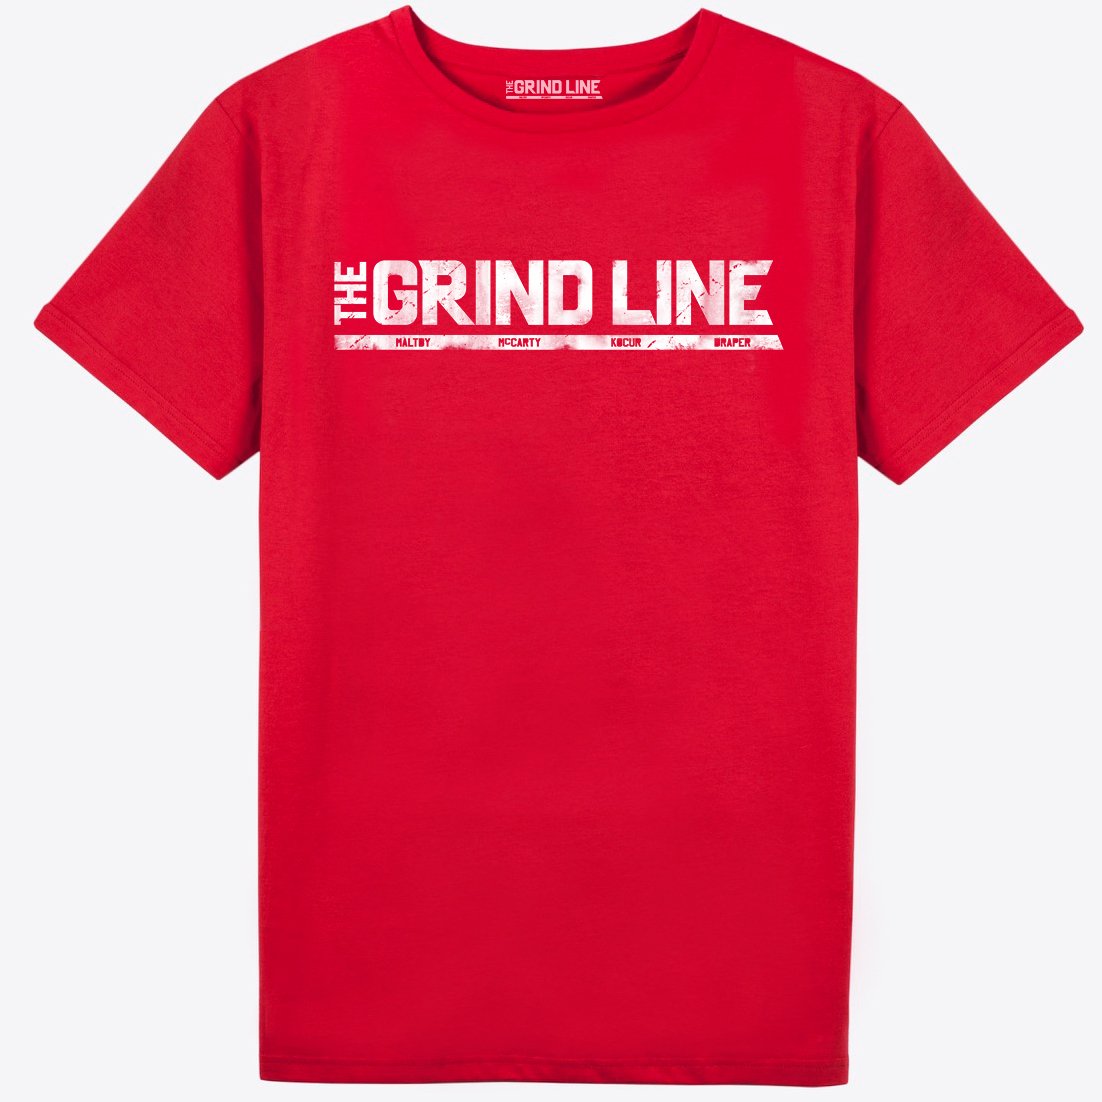 Grindline Shirt - Original.jpg